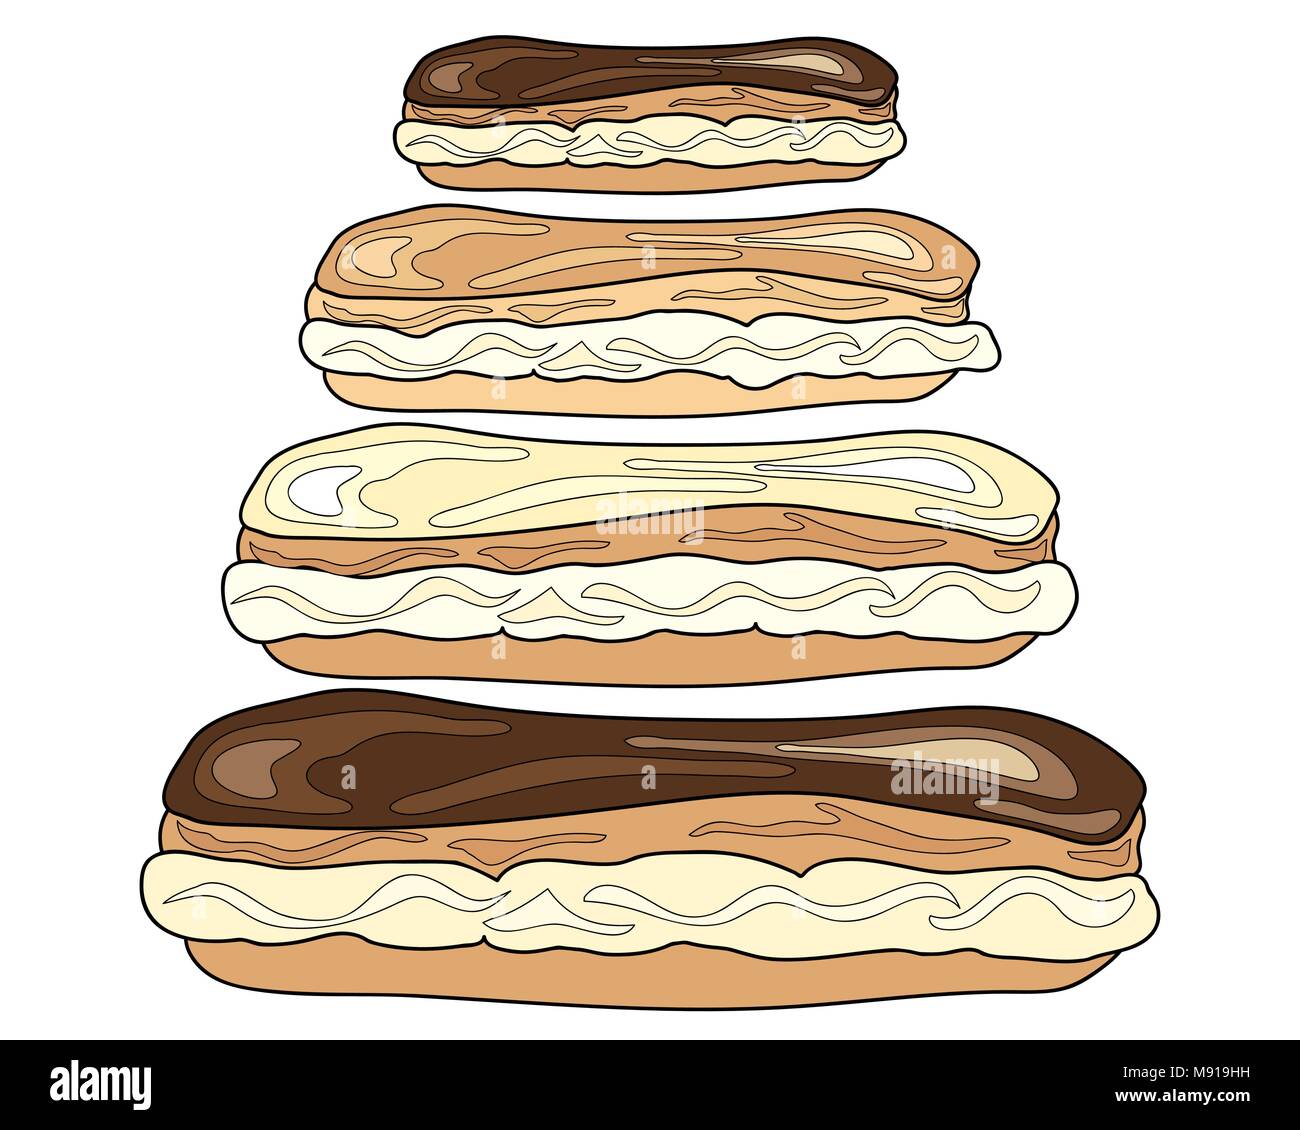 Un vecteur illustration en format eps 8 crème rempli de petits pains au chocolat choux glaçage sur un fond blanc Illustration de Vecteur